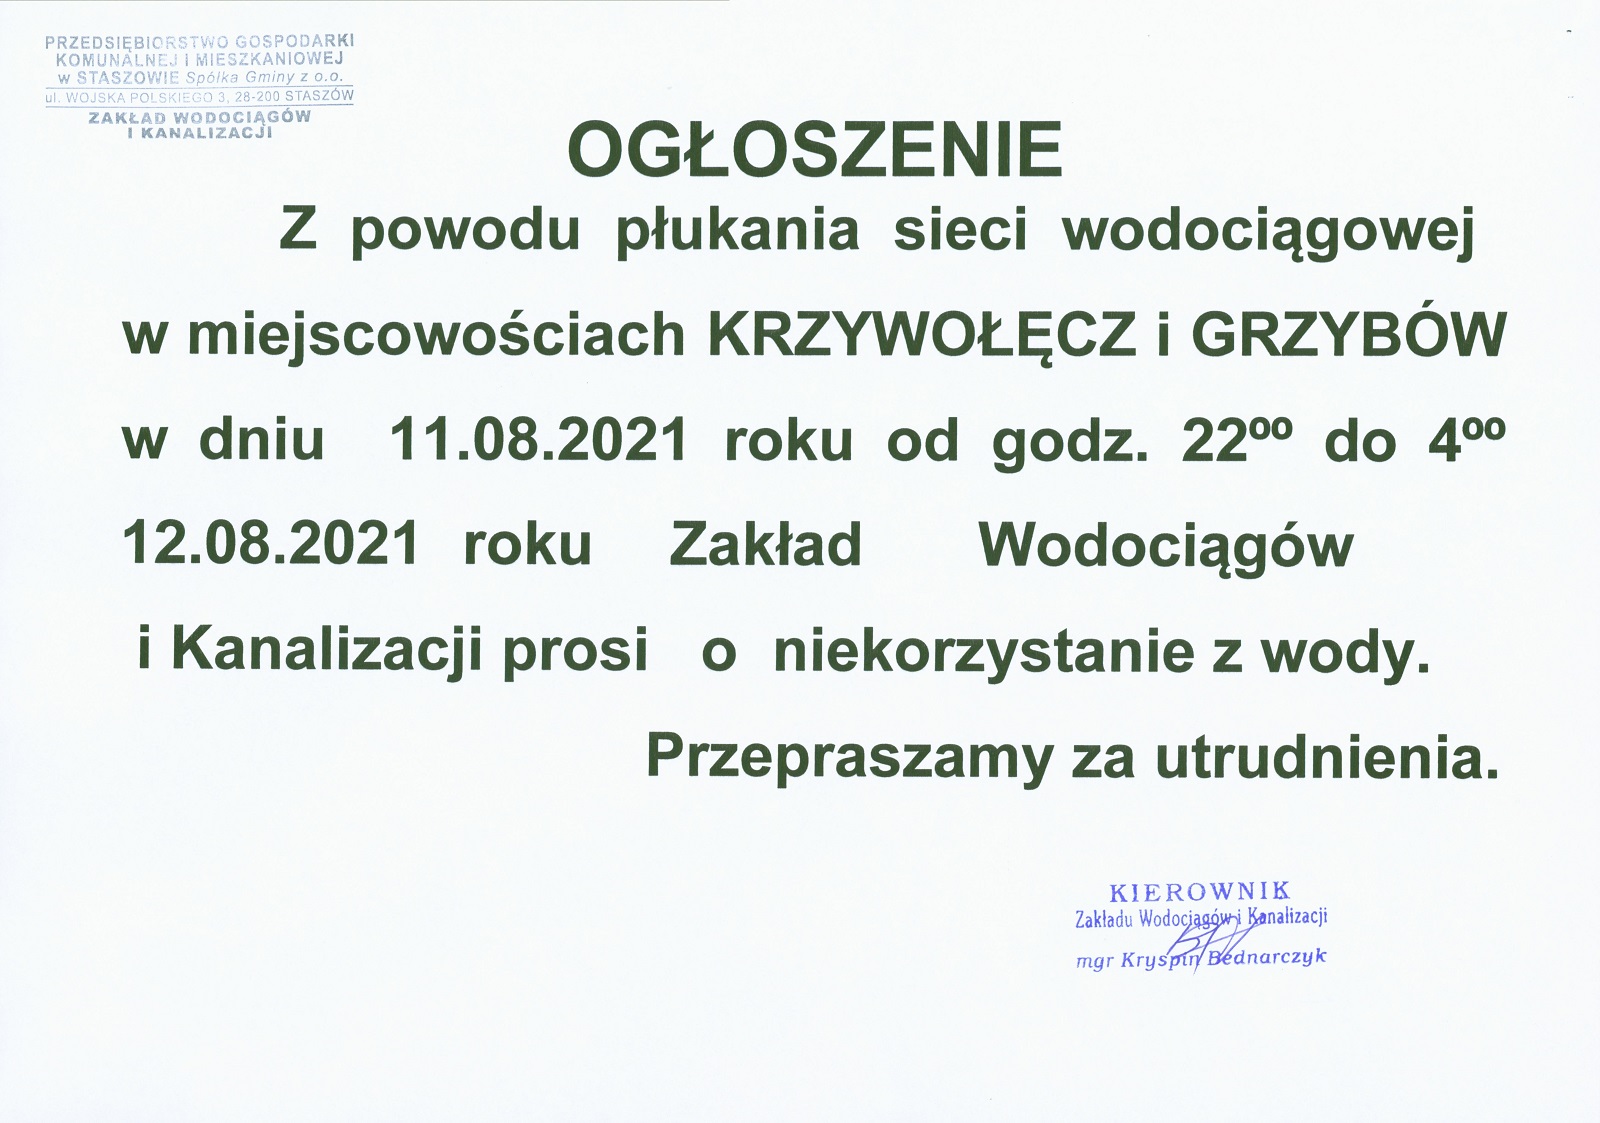 Płukanie sieci wodociągowej w miejscowościach Krzywołęcz, Grzybów